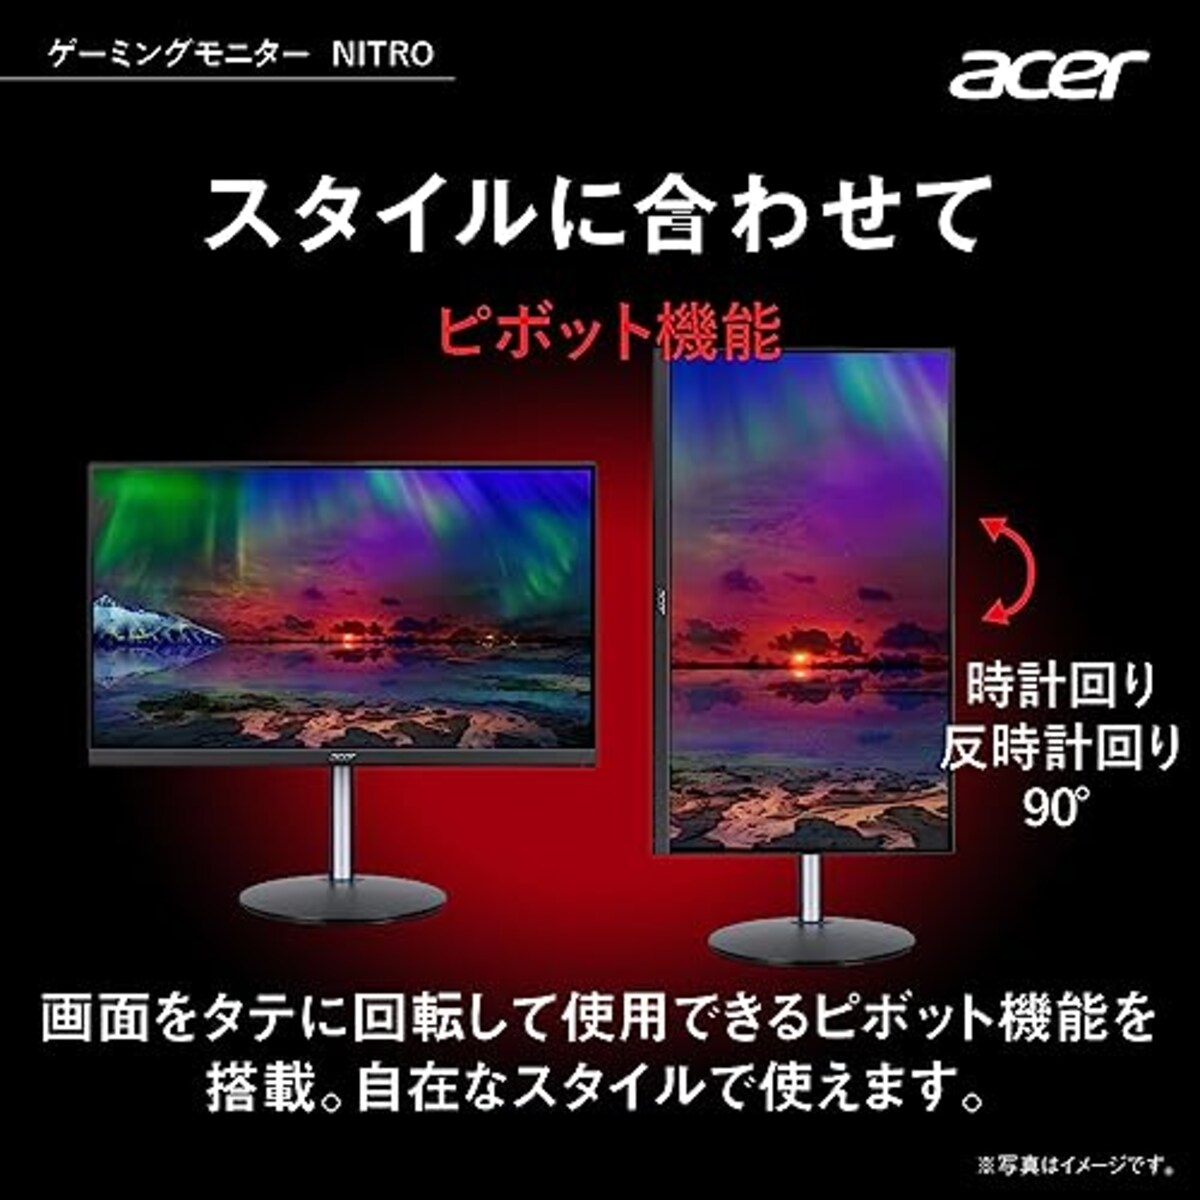  日本エイサー 【Amazon.co.jp限定】Acer Nitro ゲーミングモニター 23.8インチ VA 非光沢 フルHD 180Hz 1ms HDMI 2.0 DisplayPort VESAマウント対応 スピーカー内蔵 ヘッドホン端子 ピボット機能 高さ調整 XF243YS3bmiiprx PC/PS5/Xbox X/S向き画像4 